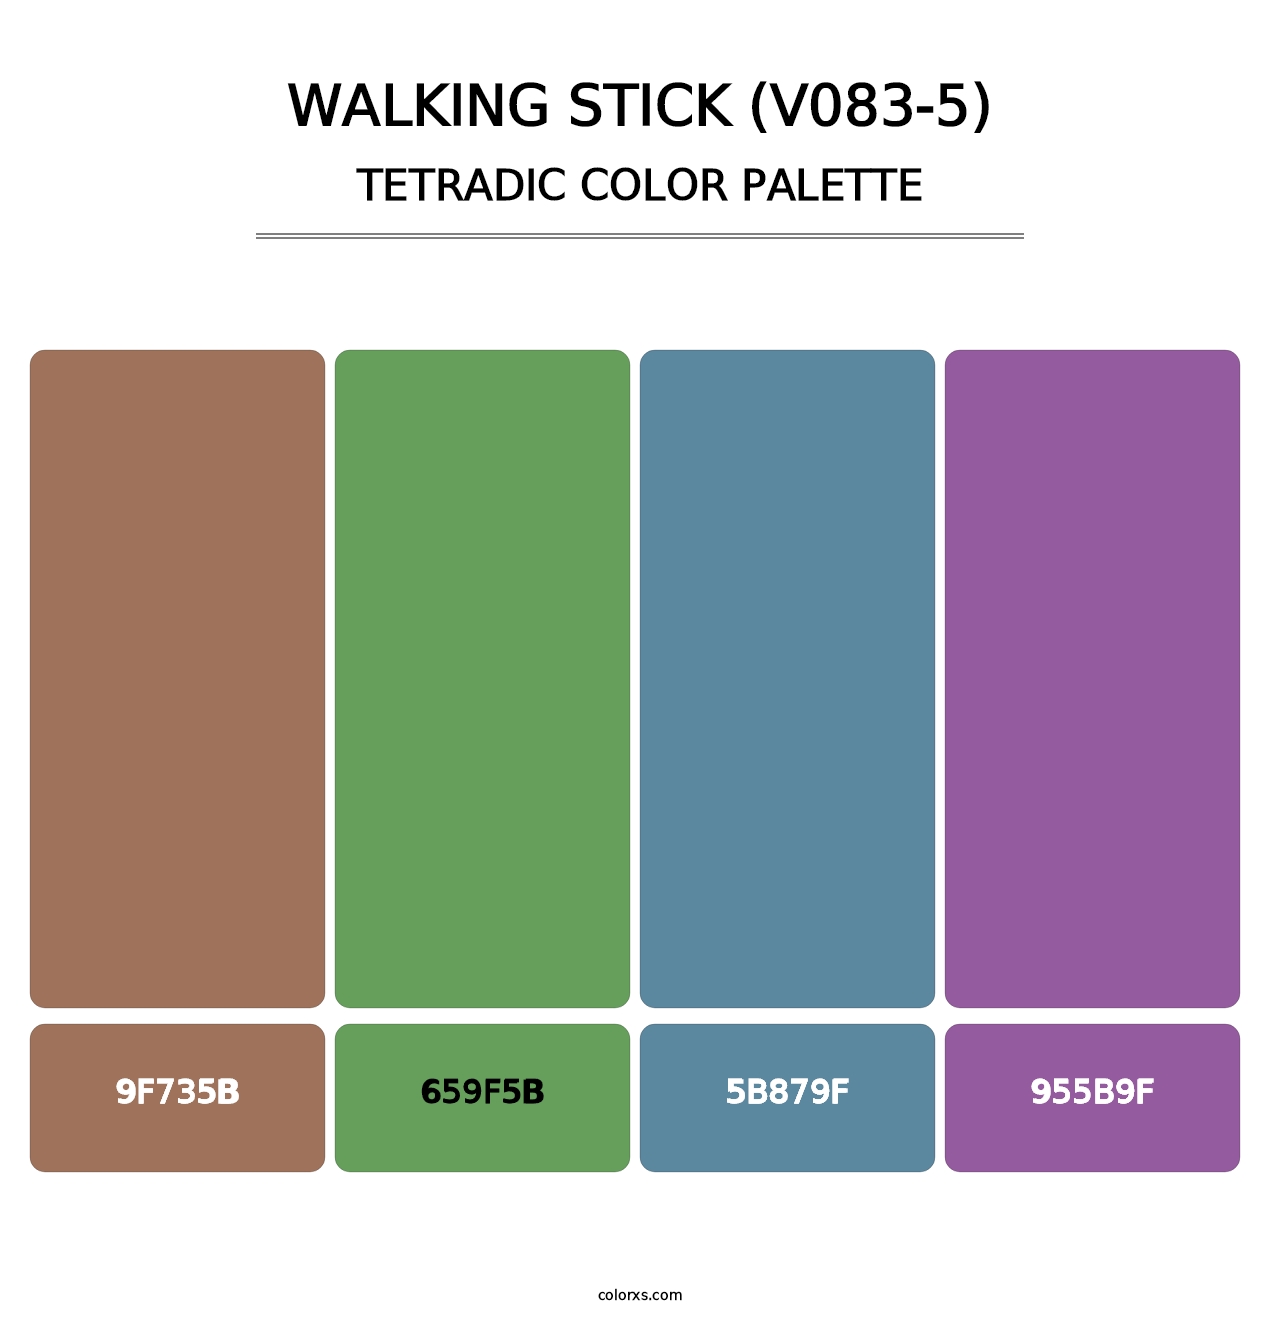 Walking Stick (V083-5) - Tetradic Color Palette